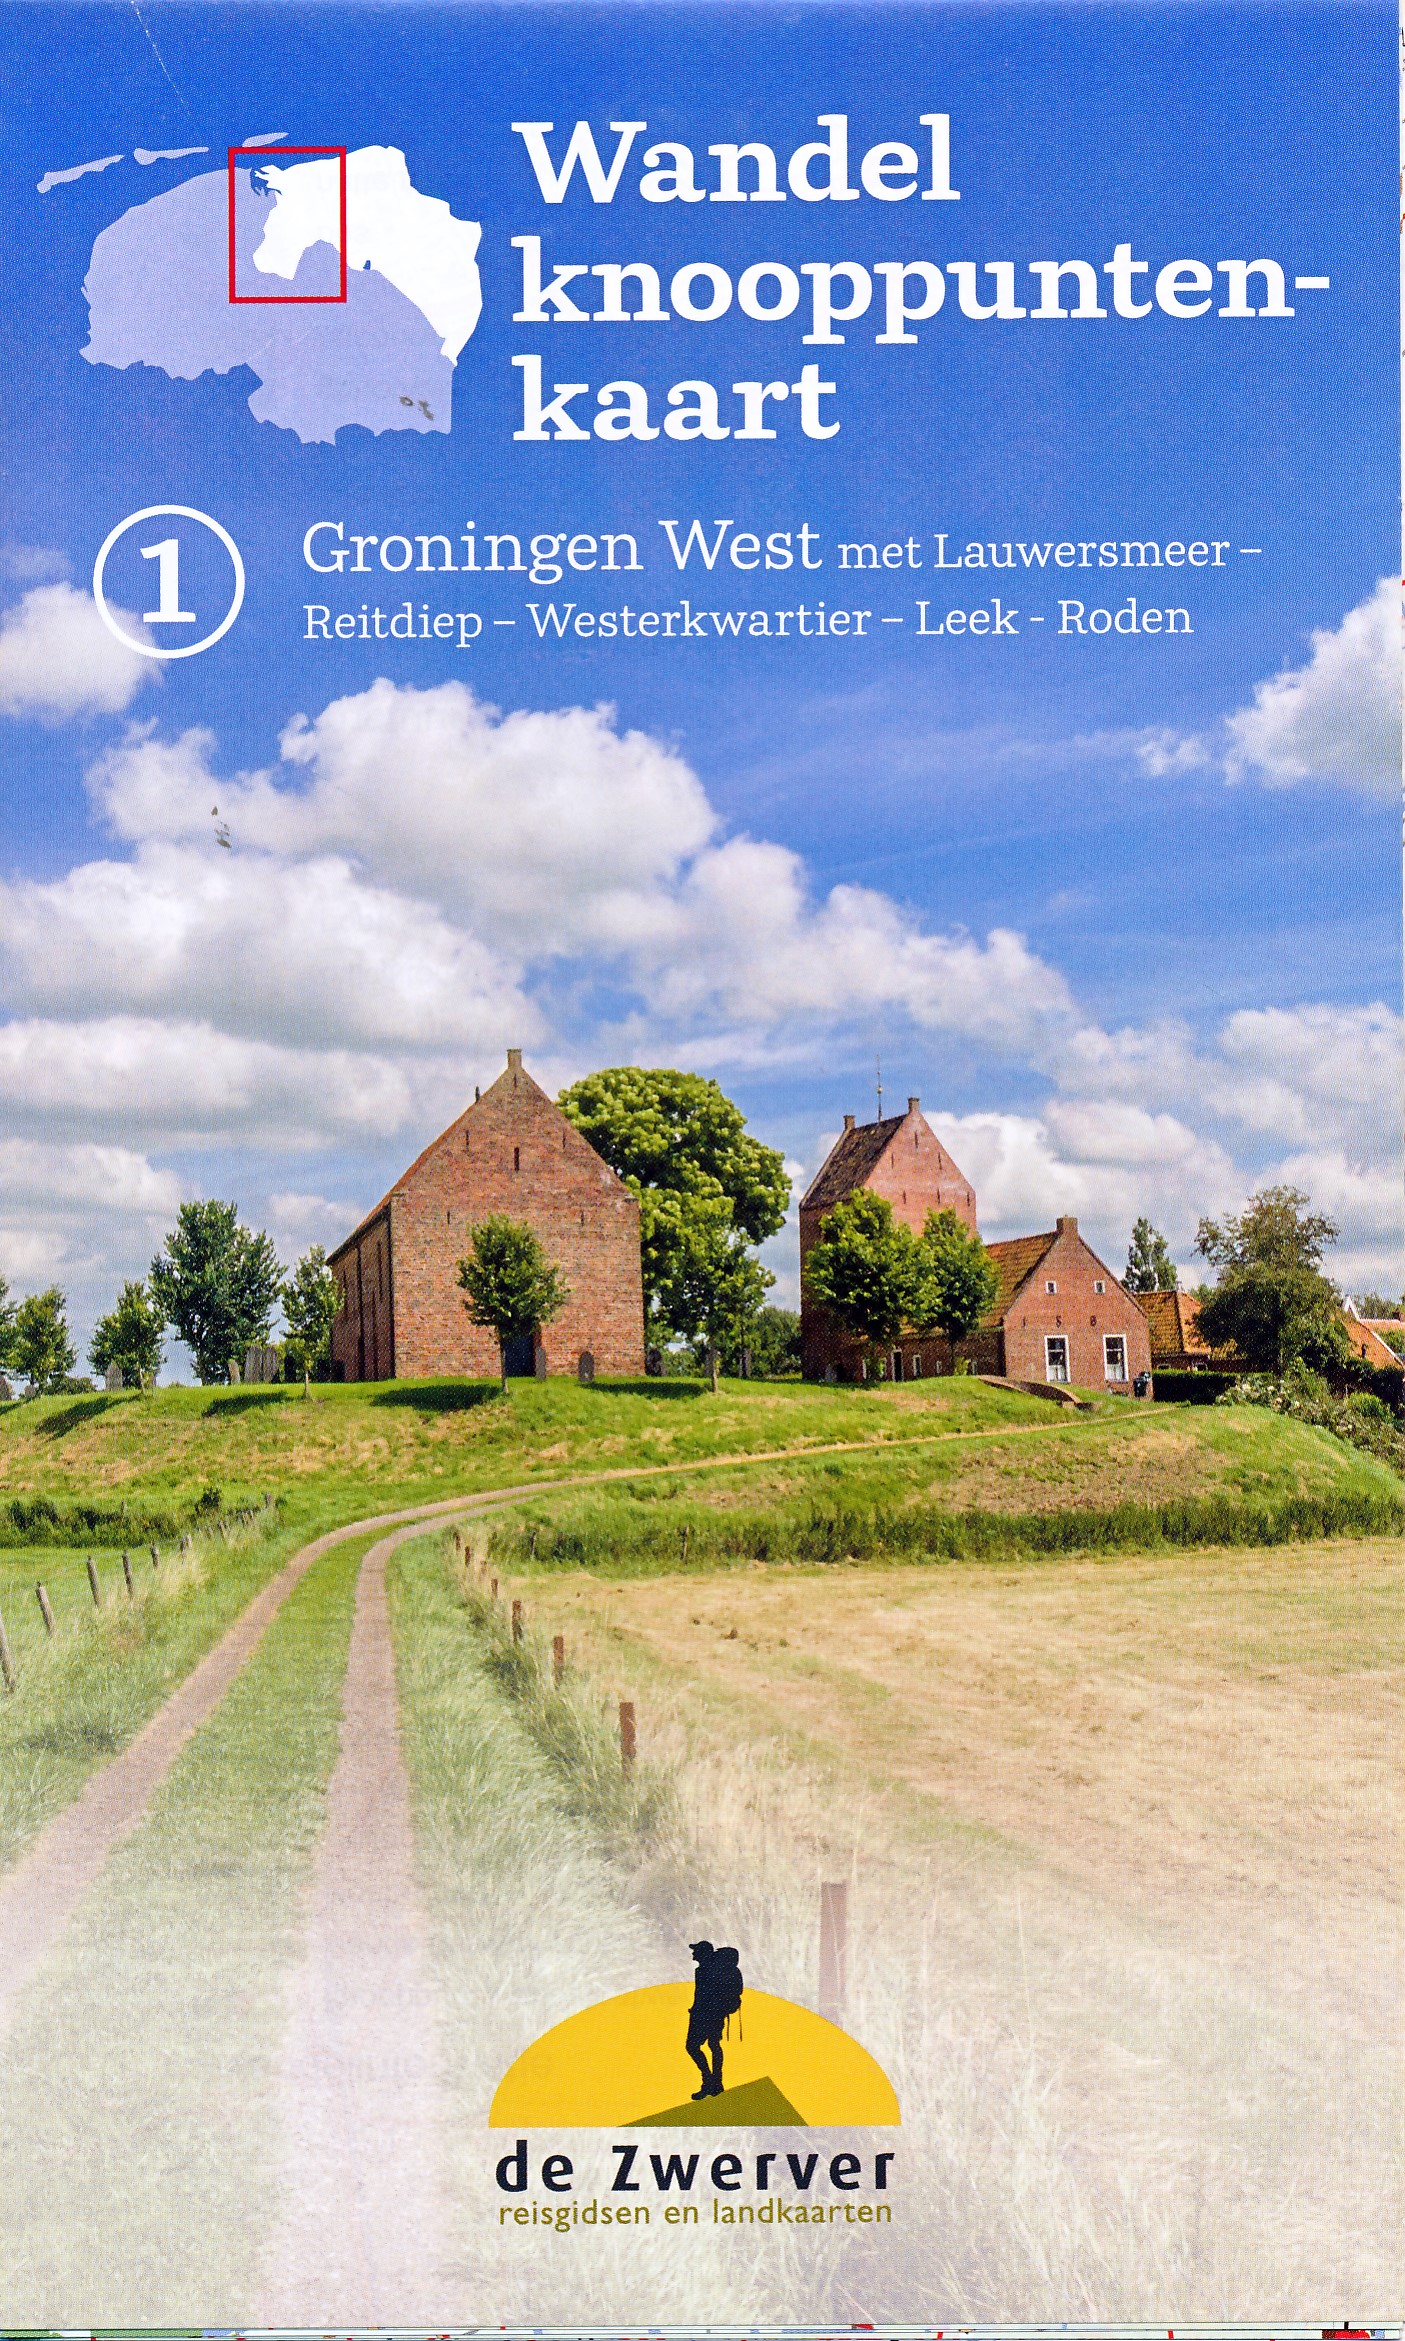 Online bestellen: Wandelknooppuntenkaart - Wandelkaart 1 Groningen west | Reisboekwinkel de Zwerver